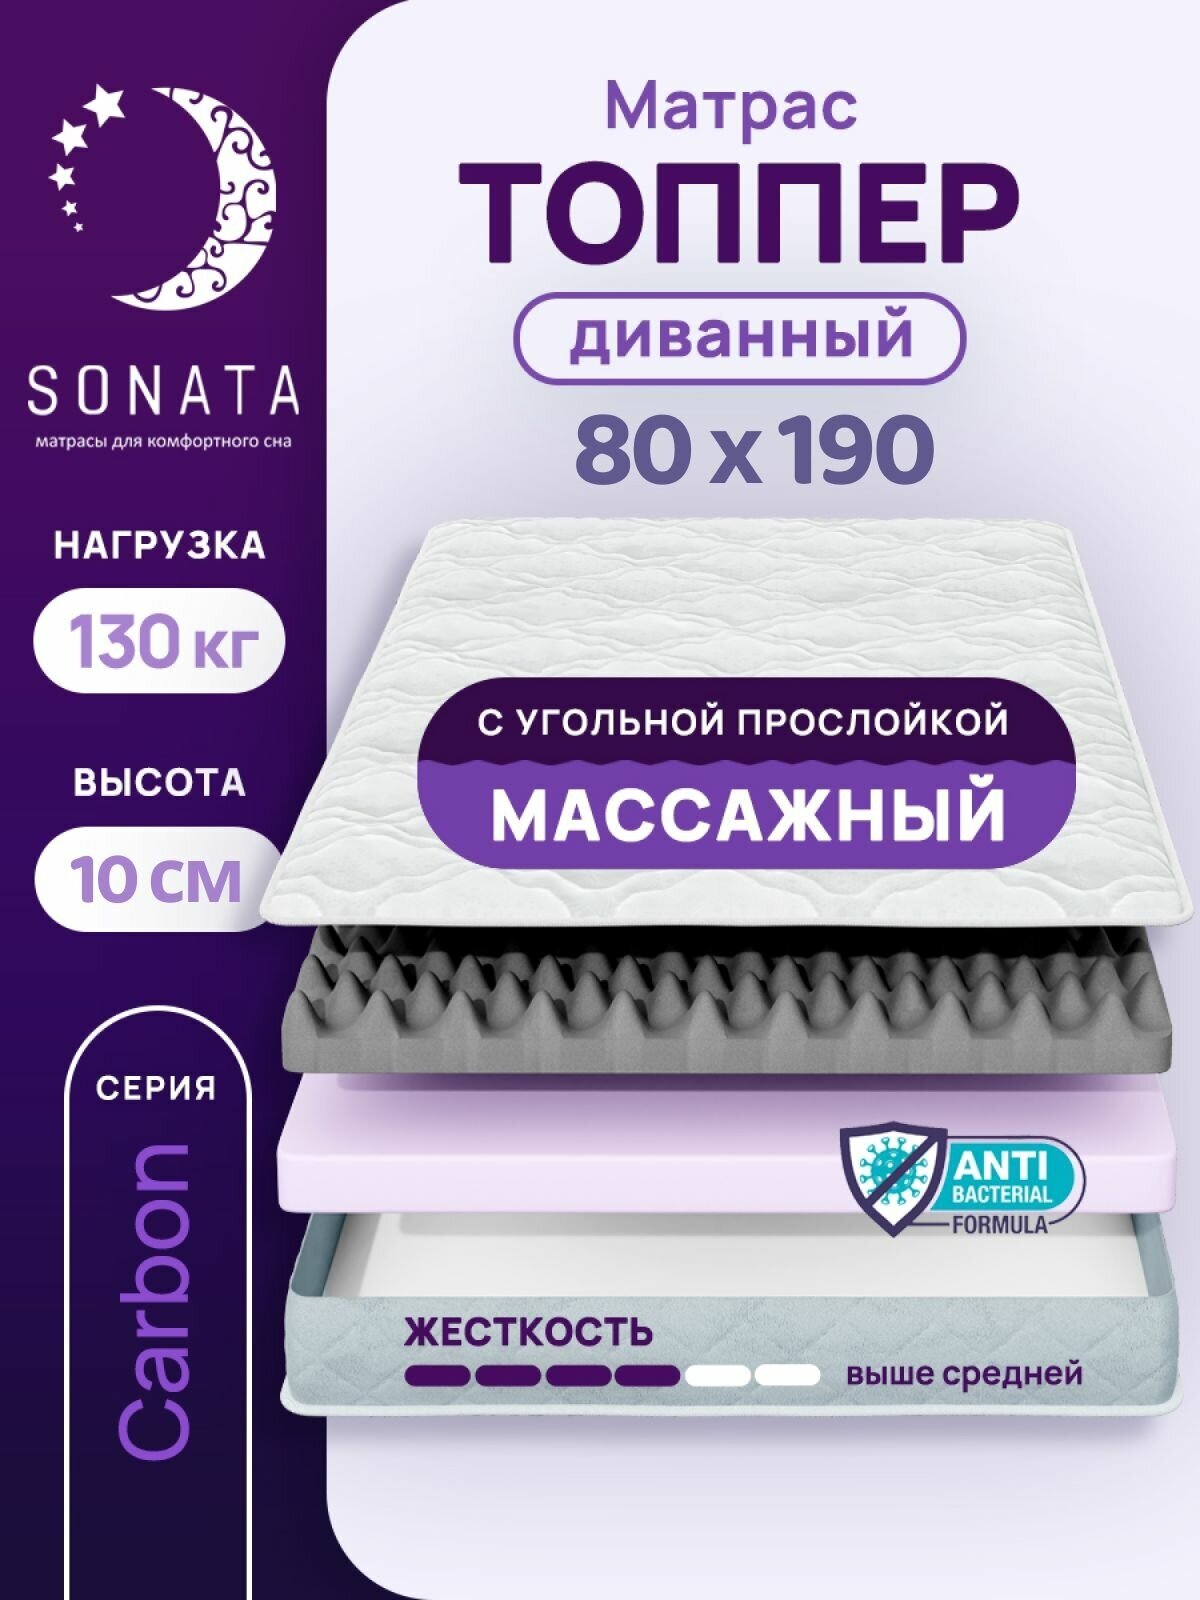 Топпер матрас 80х190 см SONATA, ортопедический, беспружинный, односпальный, тонкий матрац для дивана, кровати, высота 10 см с массажным эффектом